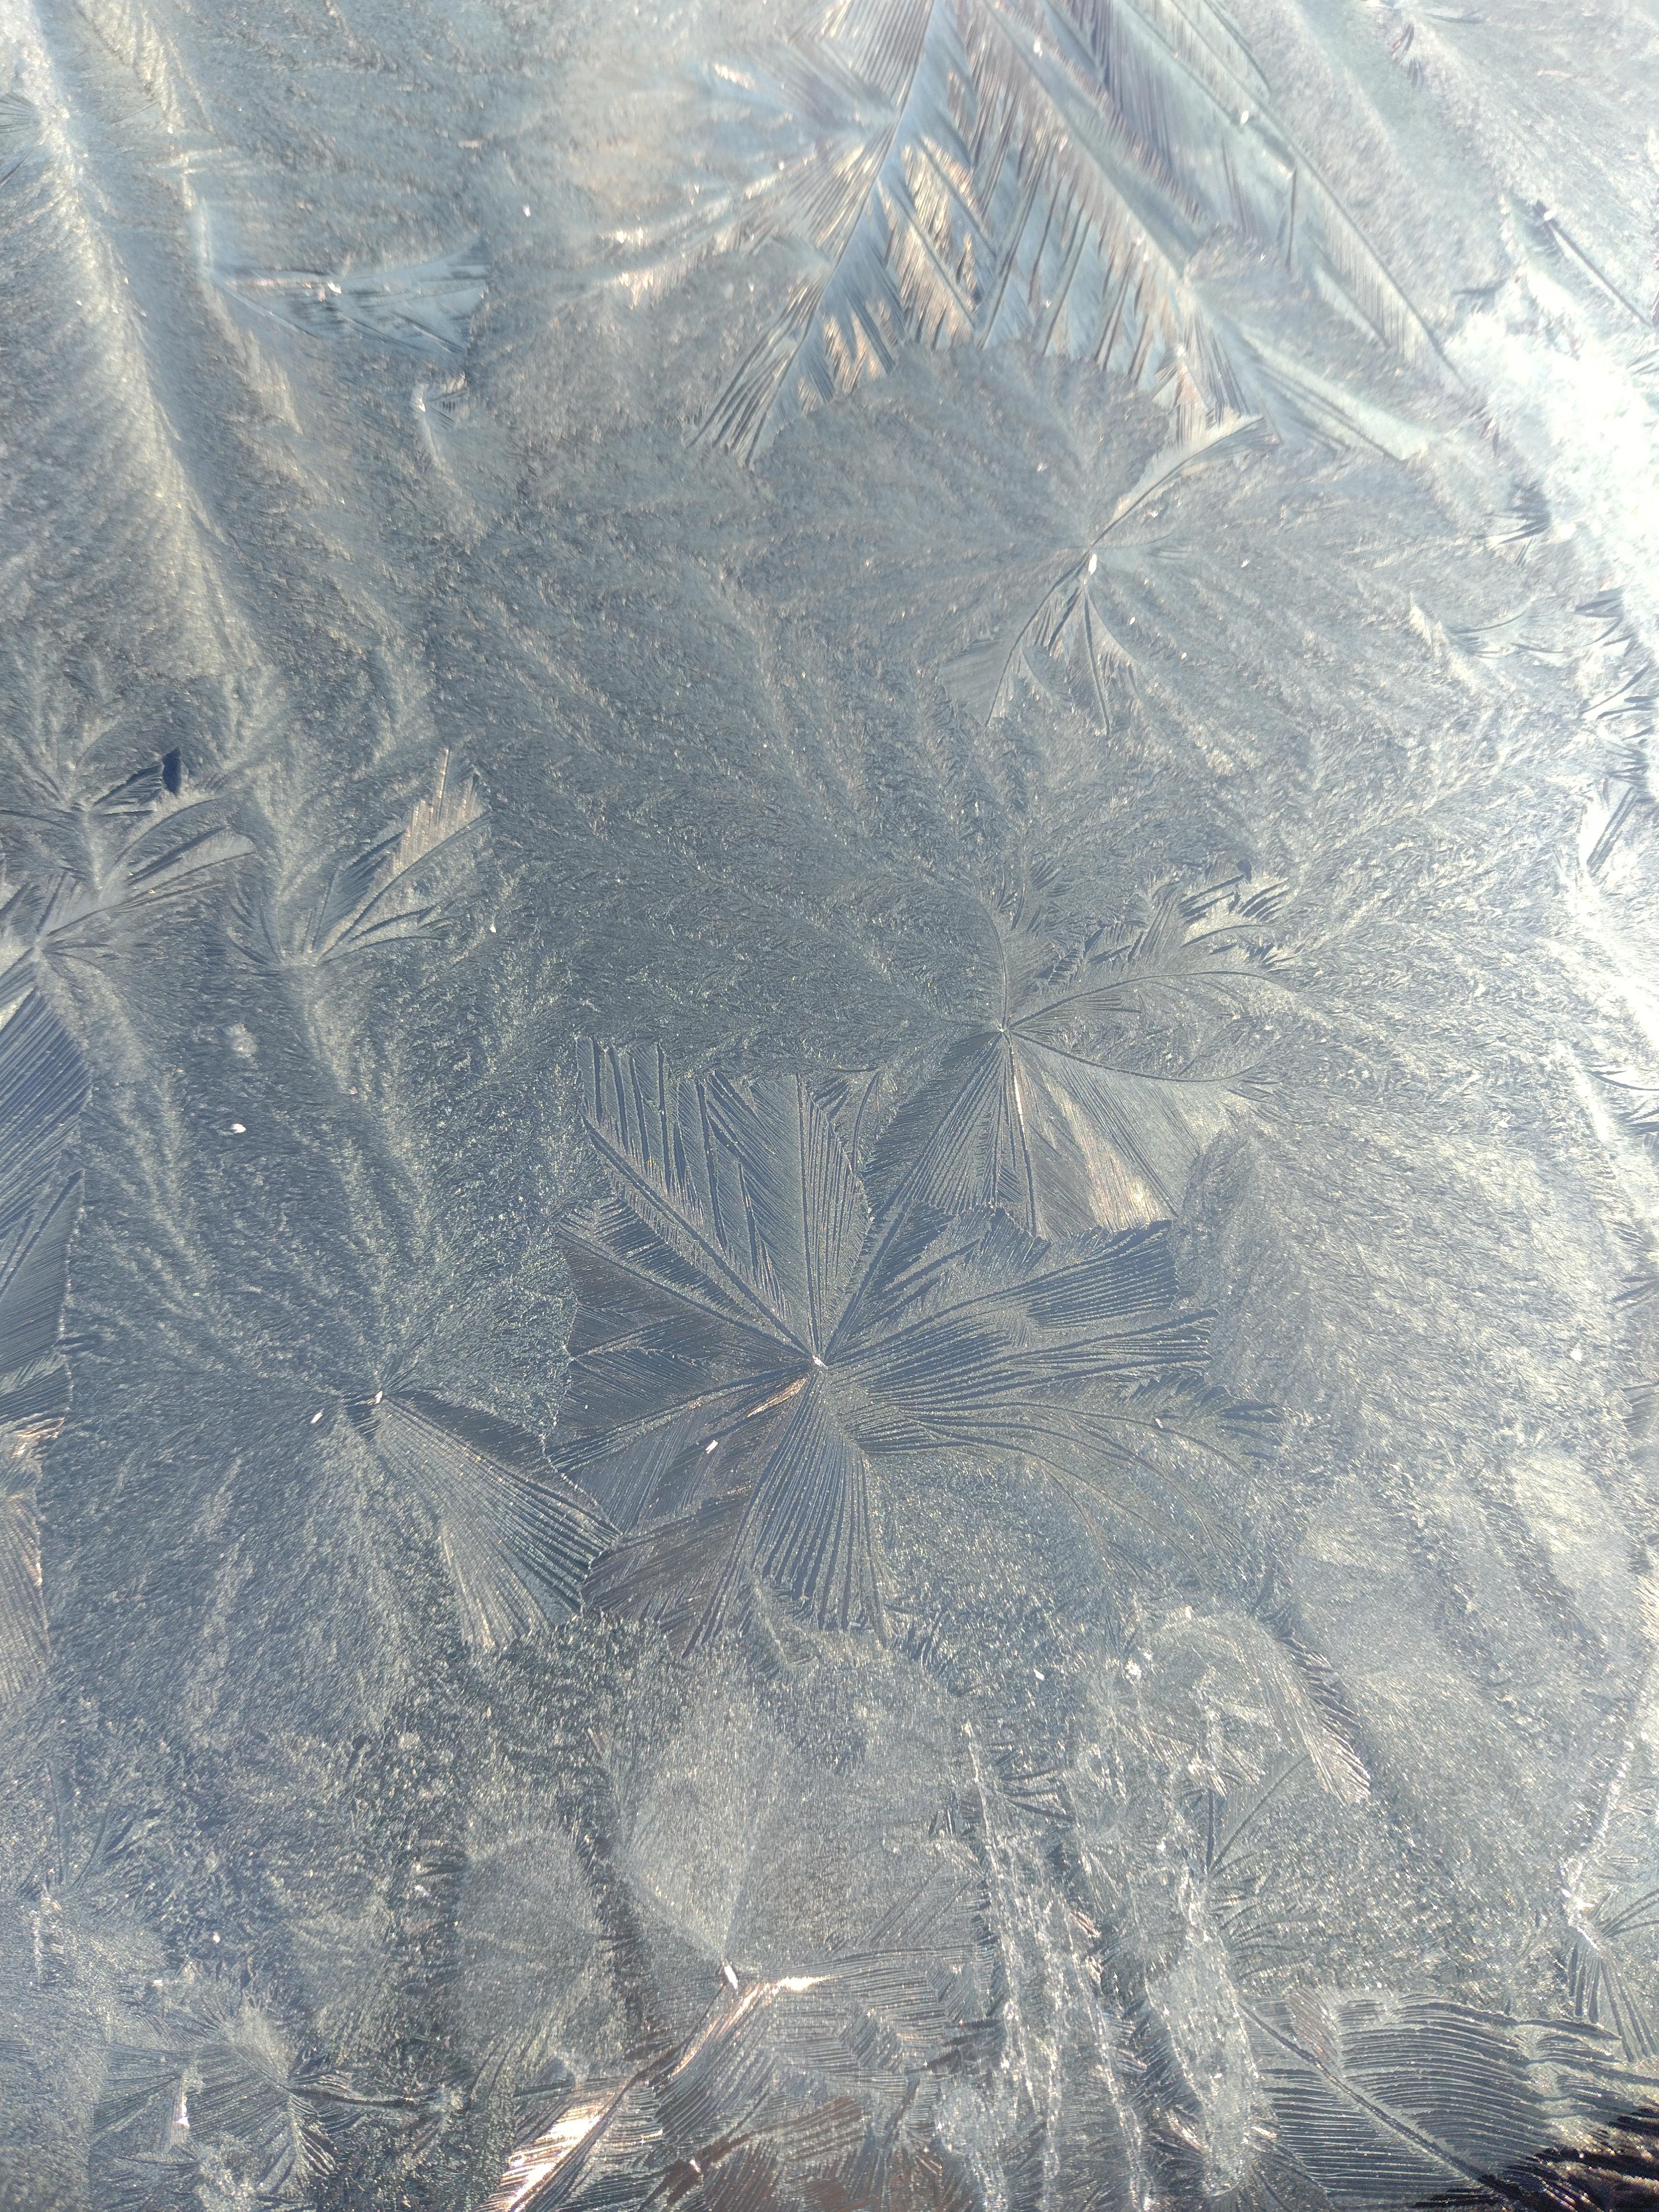 #eisblumen #frost #windschutzscheibe